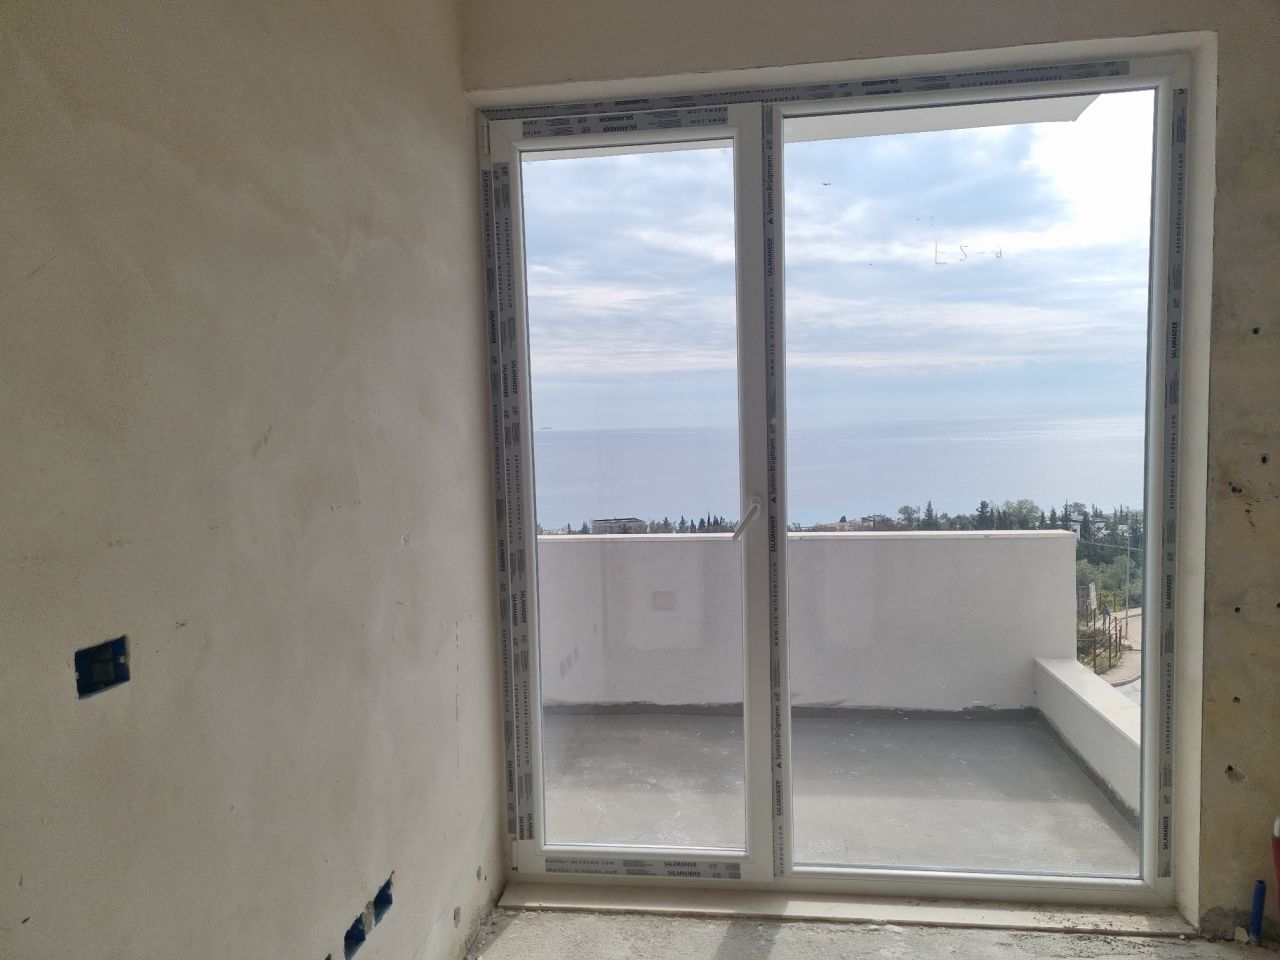 Eladó lakások Dhermiben Albániában